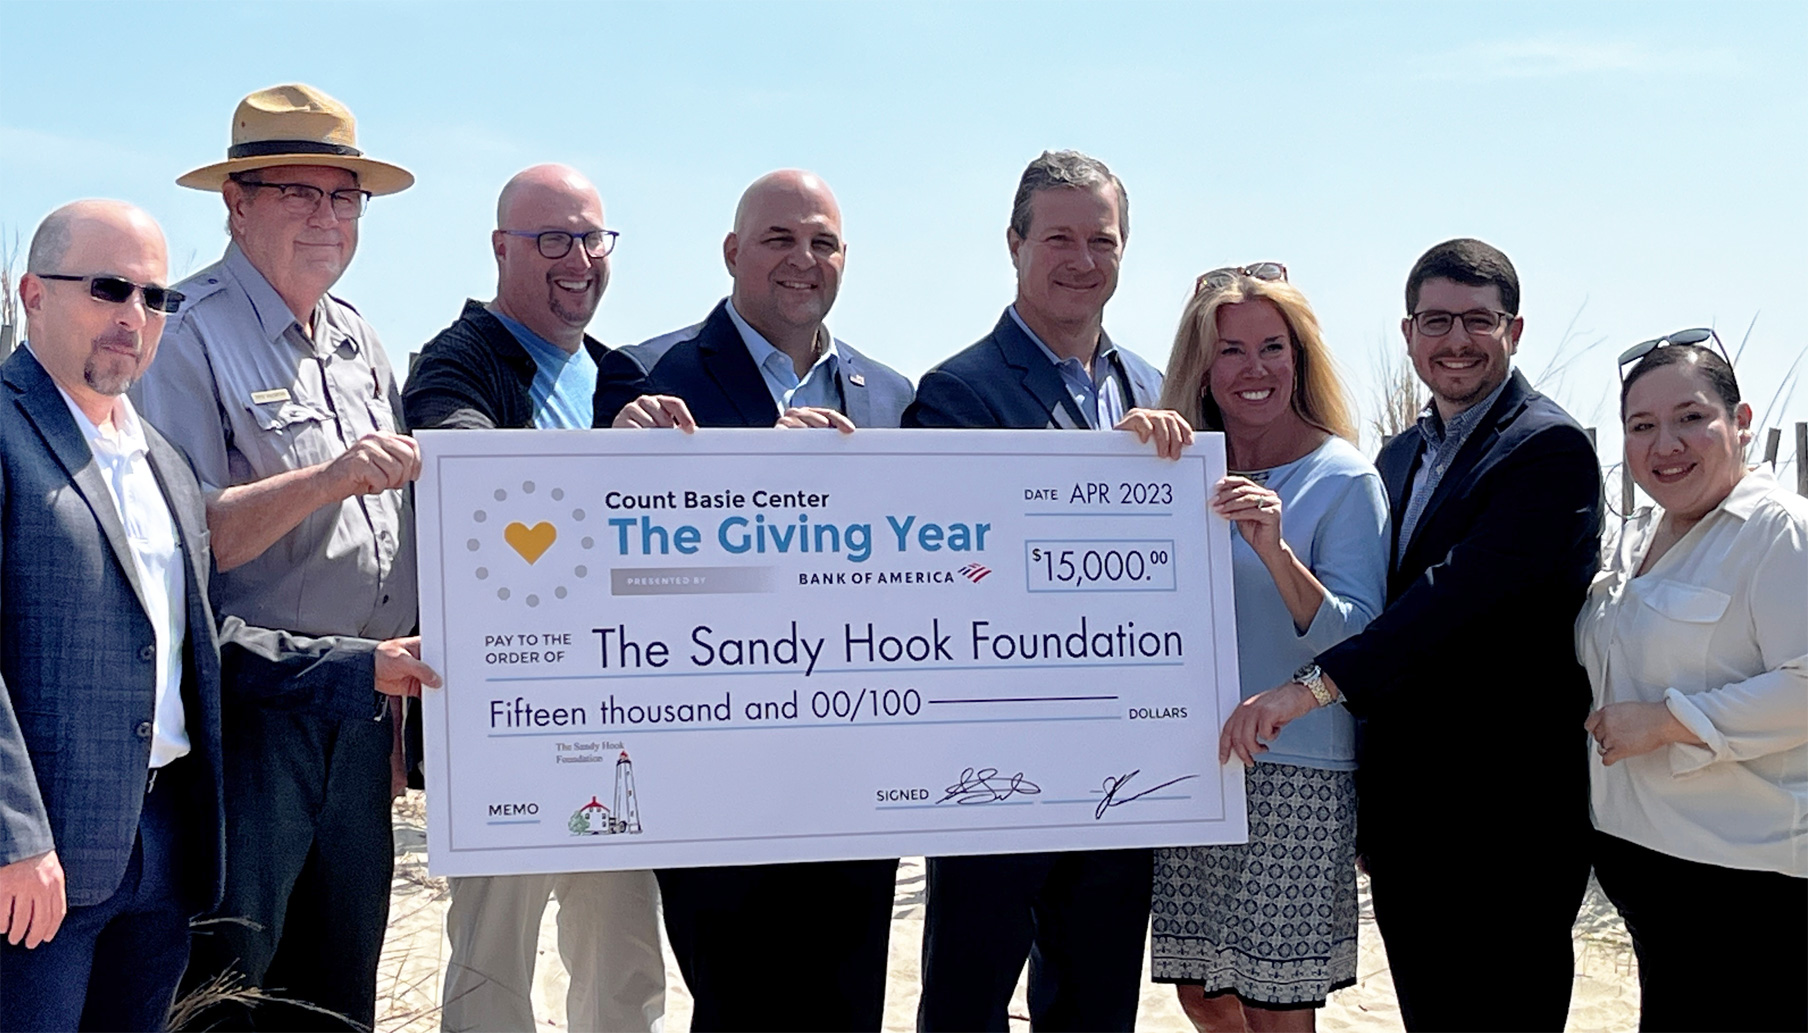 Funcionarios del Centro Count Basie y del Bank of America entregan a la Fundación Sandy Hook un cheque de $15,000 como parte de la iniciativa THE GIVING YEAR